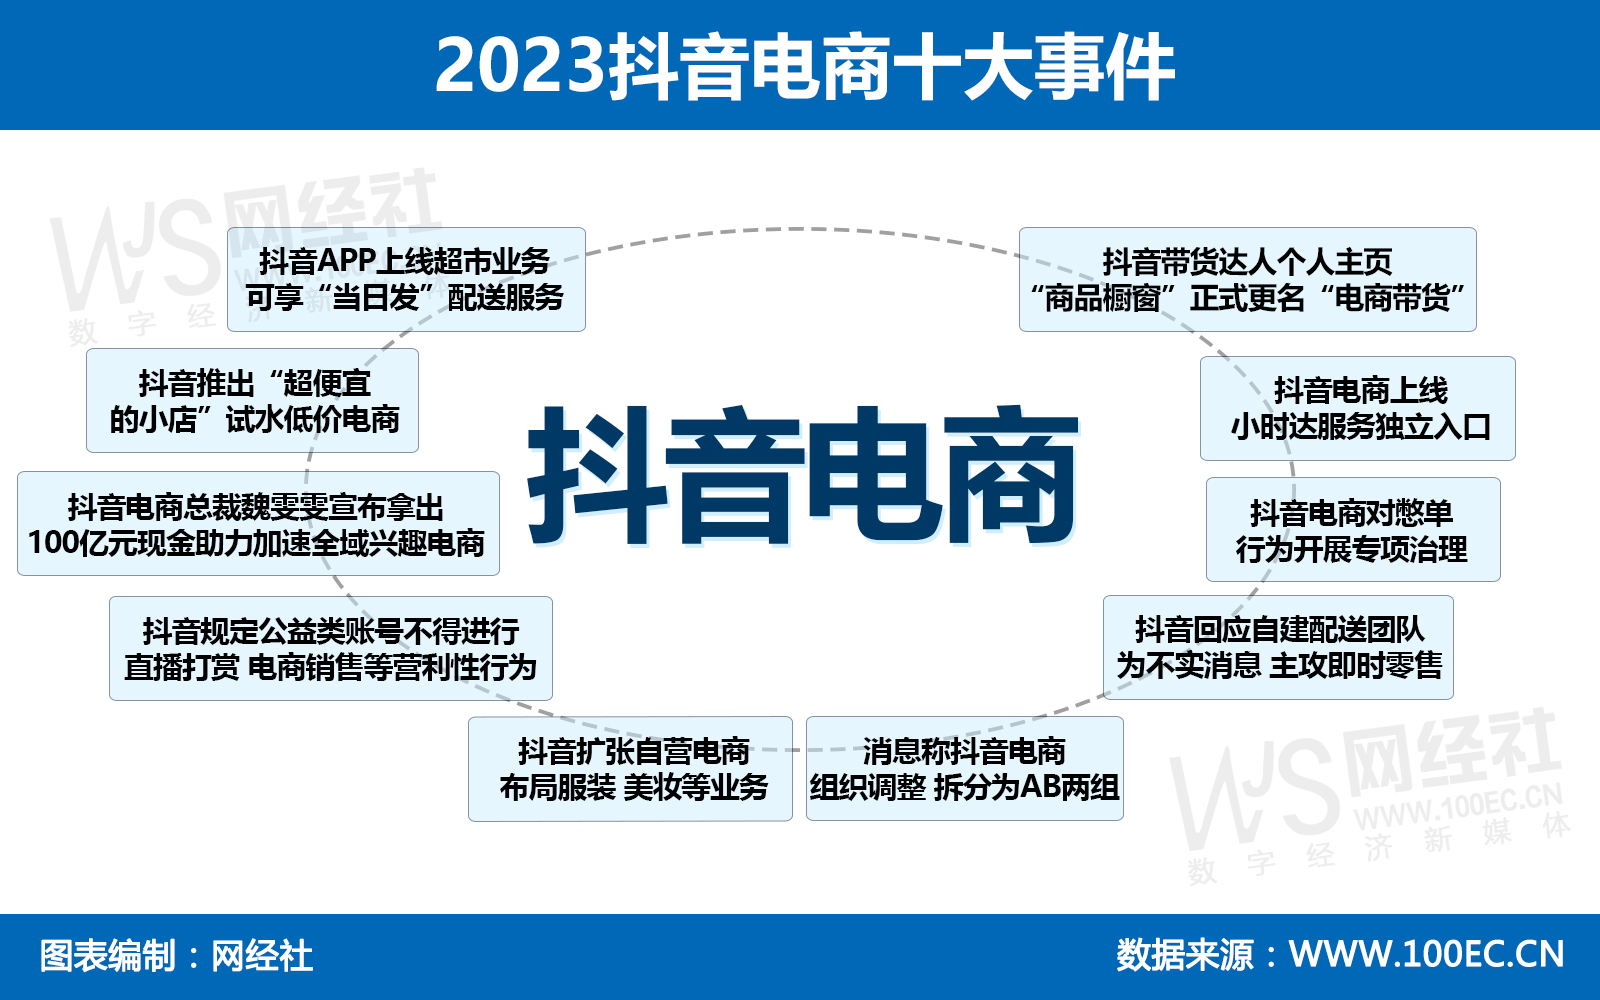 2023抖音电商发展十大发展性事件(2).jpg